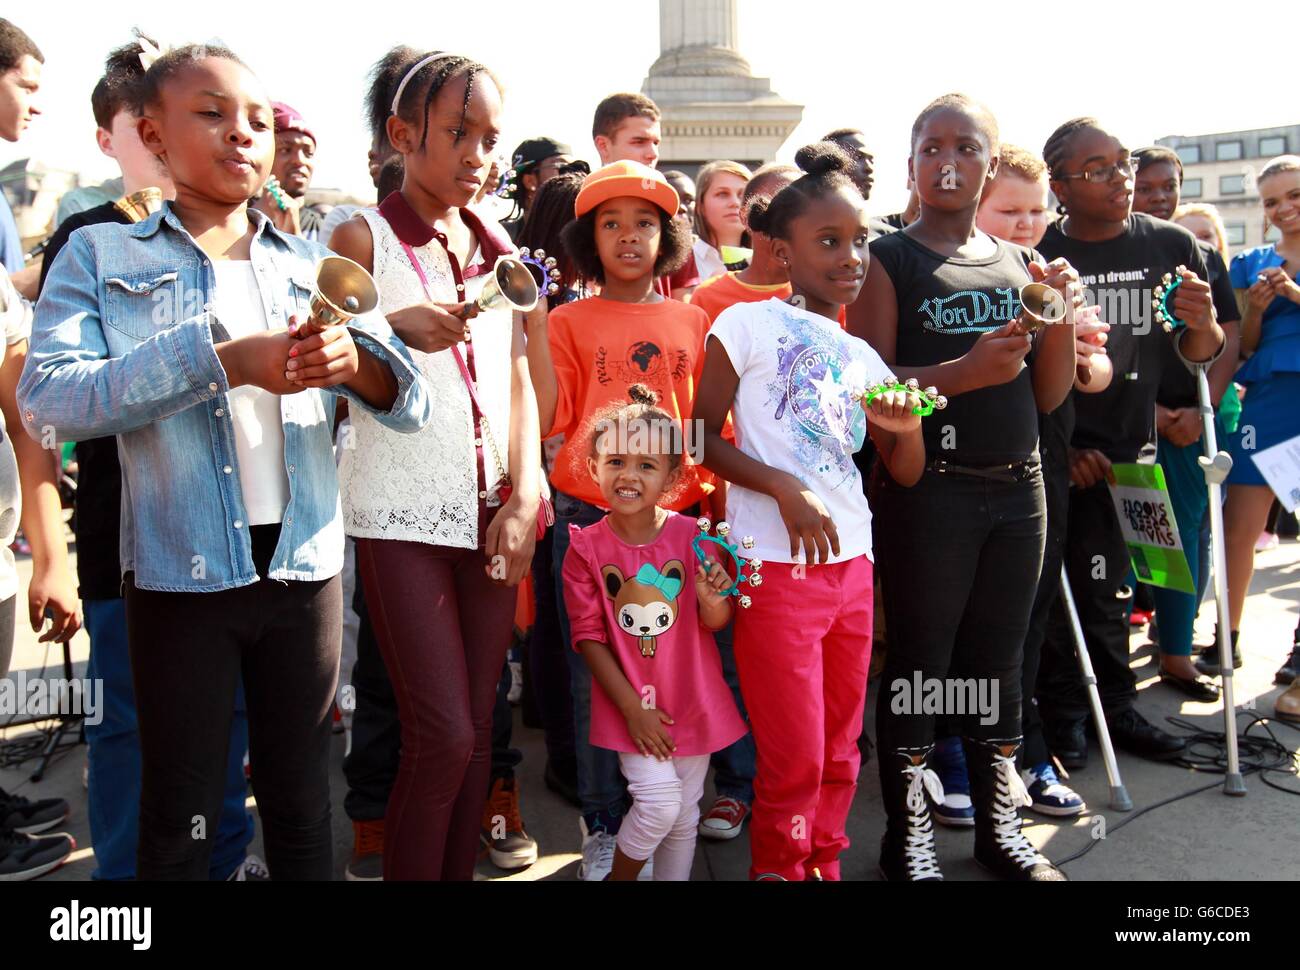 Cinquante jeunes sonneurs marquent le 50e anniversaire du discours de Martin Luther King « J'ai un rêve ». Sonnettes sonnaient à 15 h, heure à laquelle le Dr King a prononcé son célèbre discours, devant des commémorations similaires à Washington. Banque D'Images